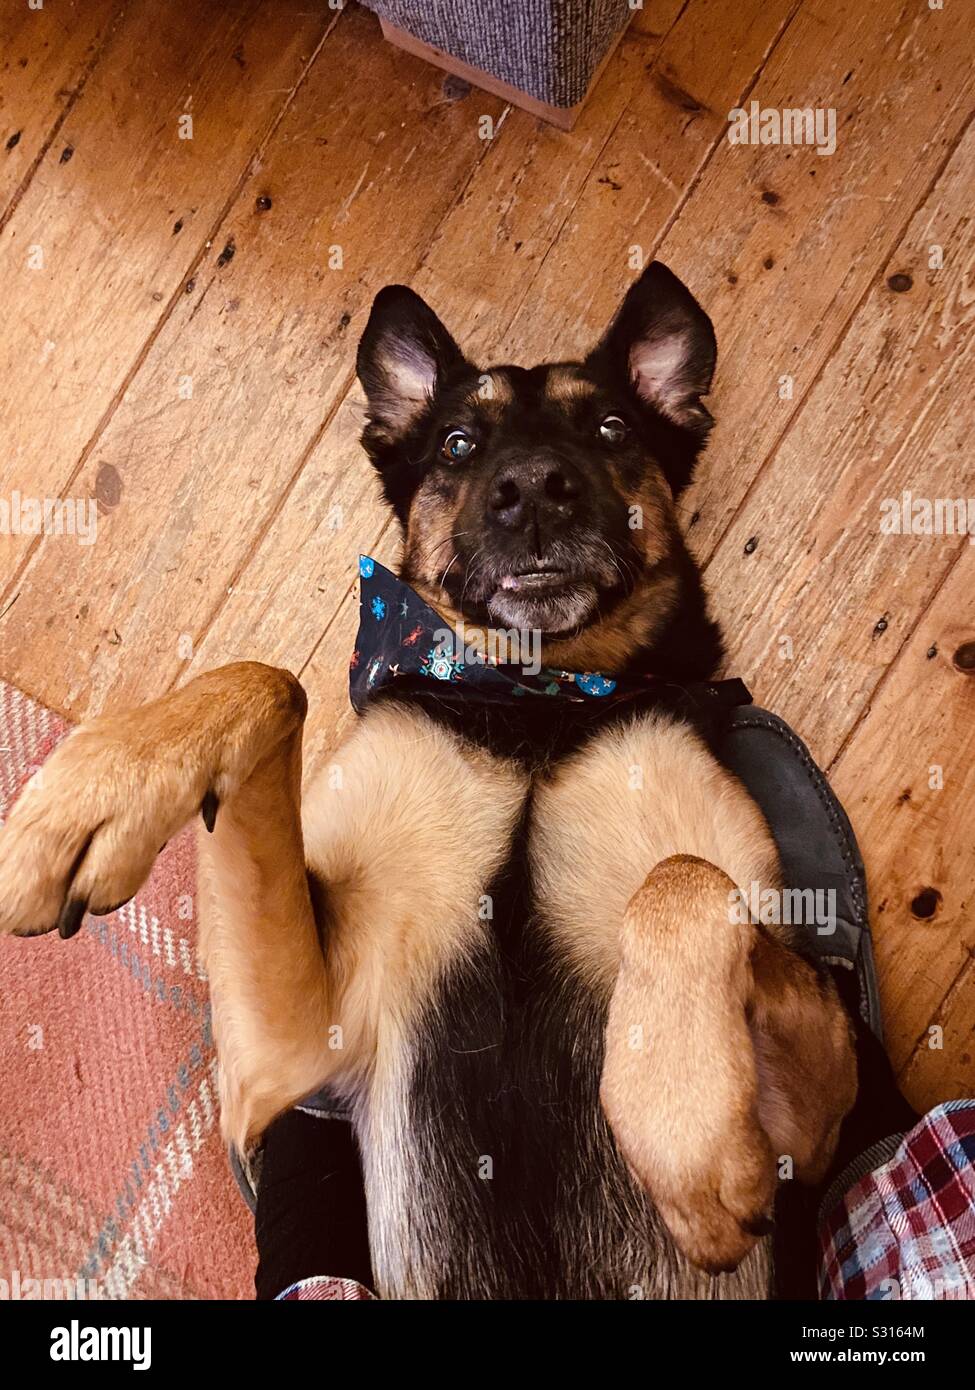 Süßer Hund mit erschrockenen Blick auf dem Rücken liegend Stockfoto